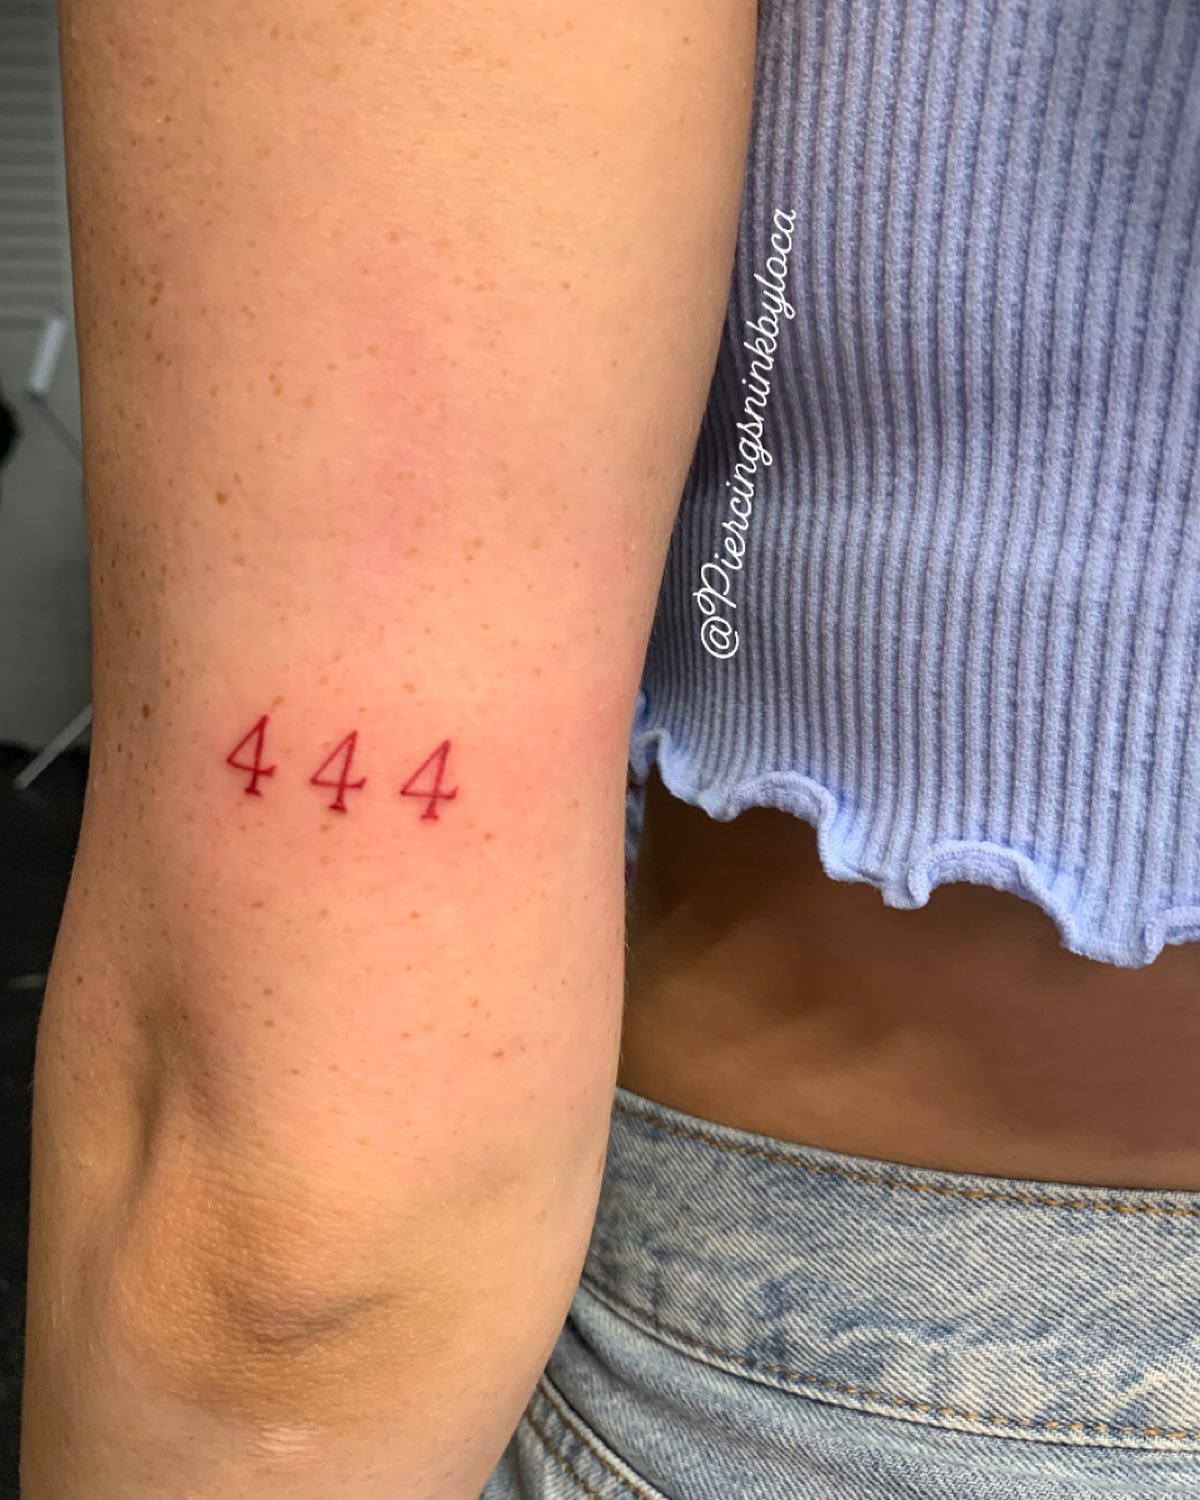 Tatuajes del 444: Numerología, espiritualidad y mucho significado